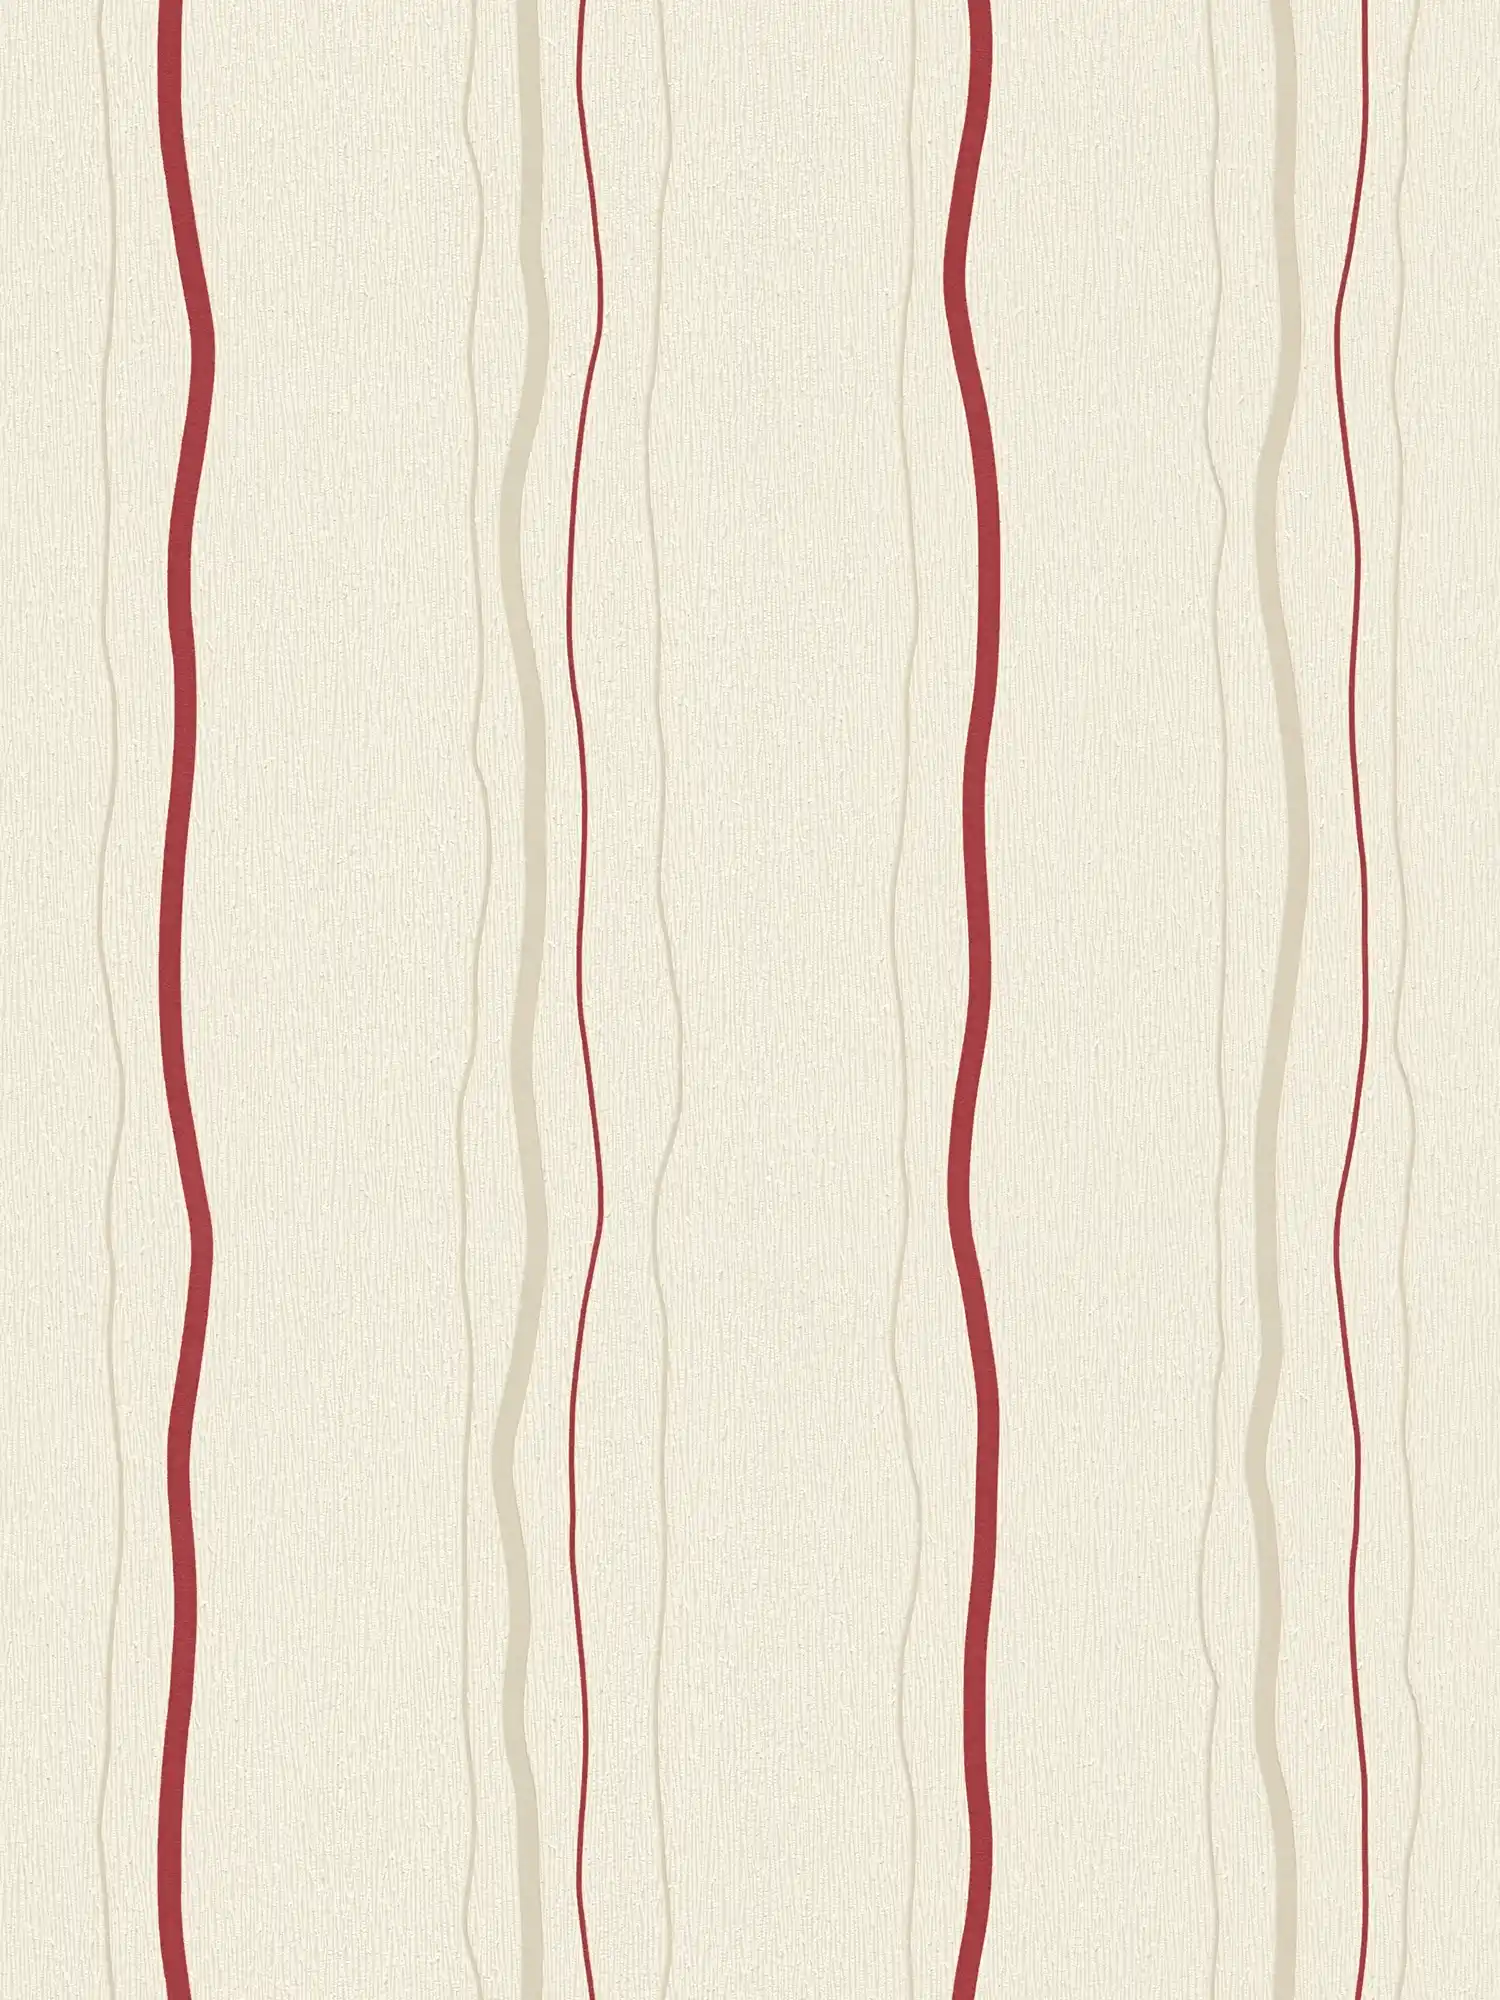 Papier peint à rayures verticales - crème, rouge, beige
